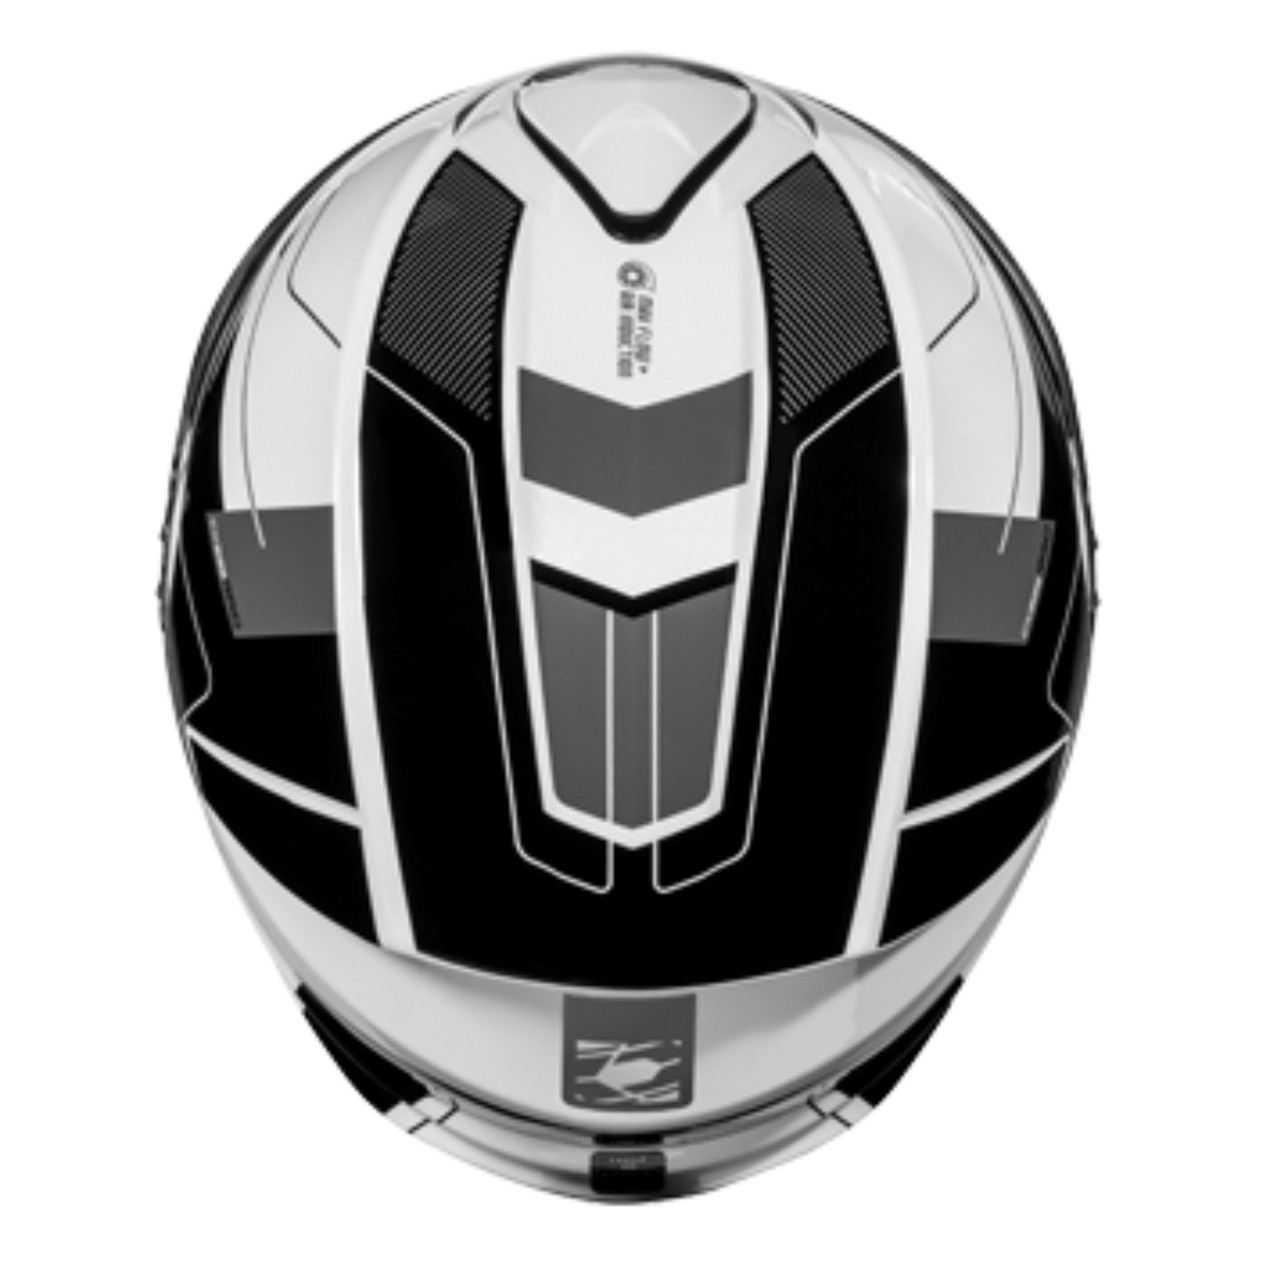 Castle X New Large White/Black Electric CX935 Raid Helmet, 36-26106